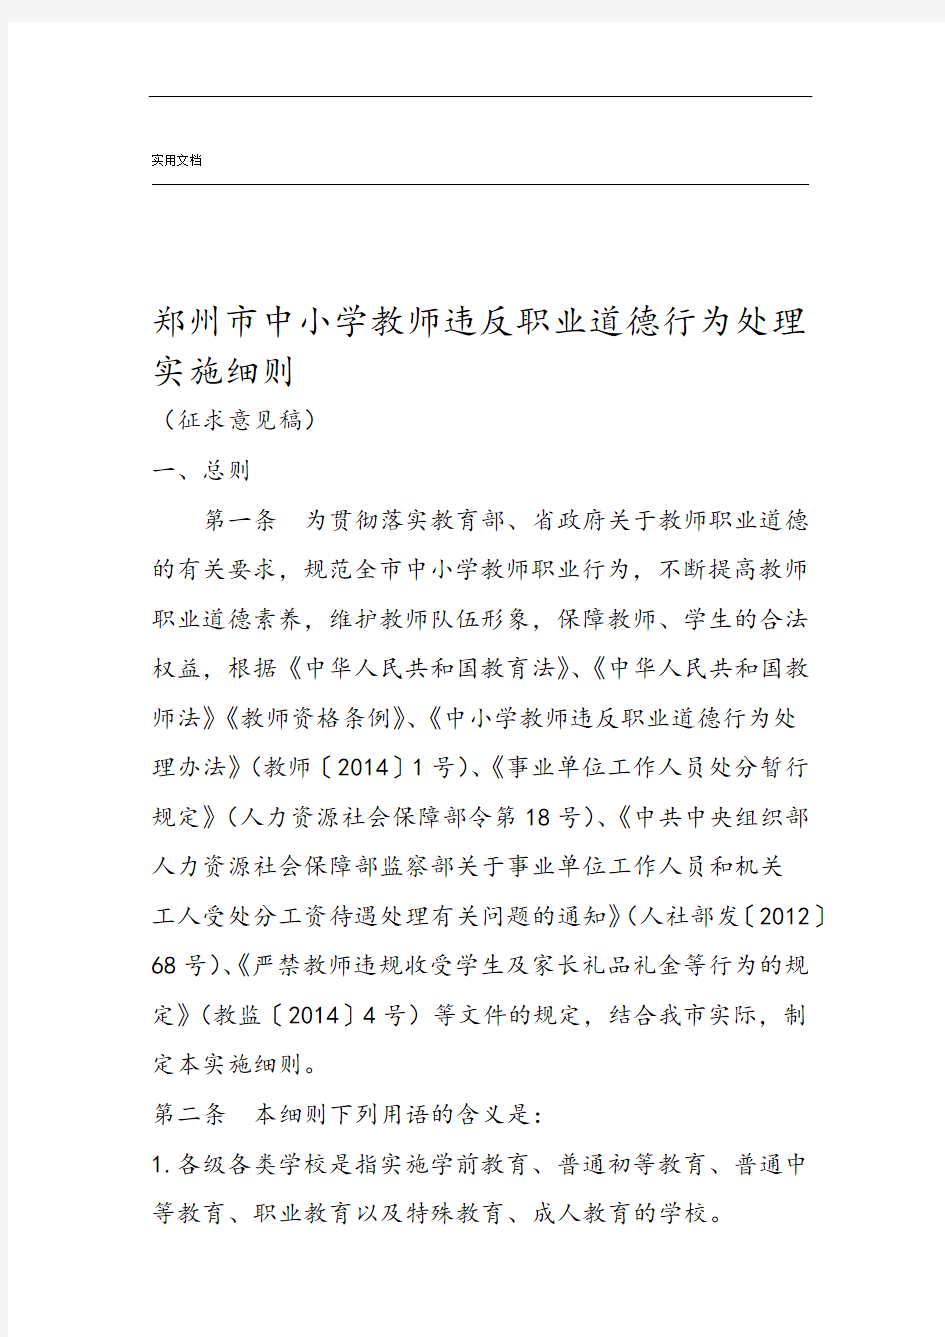 郑州市中小学教师违反职业道德行为处理实施研究细则